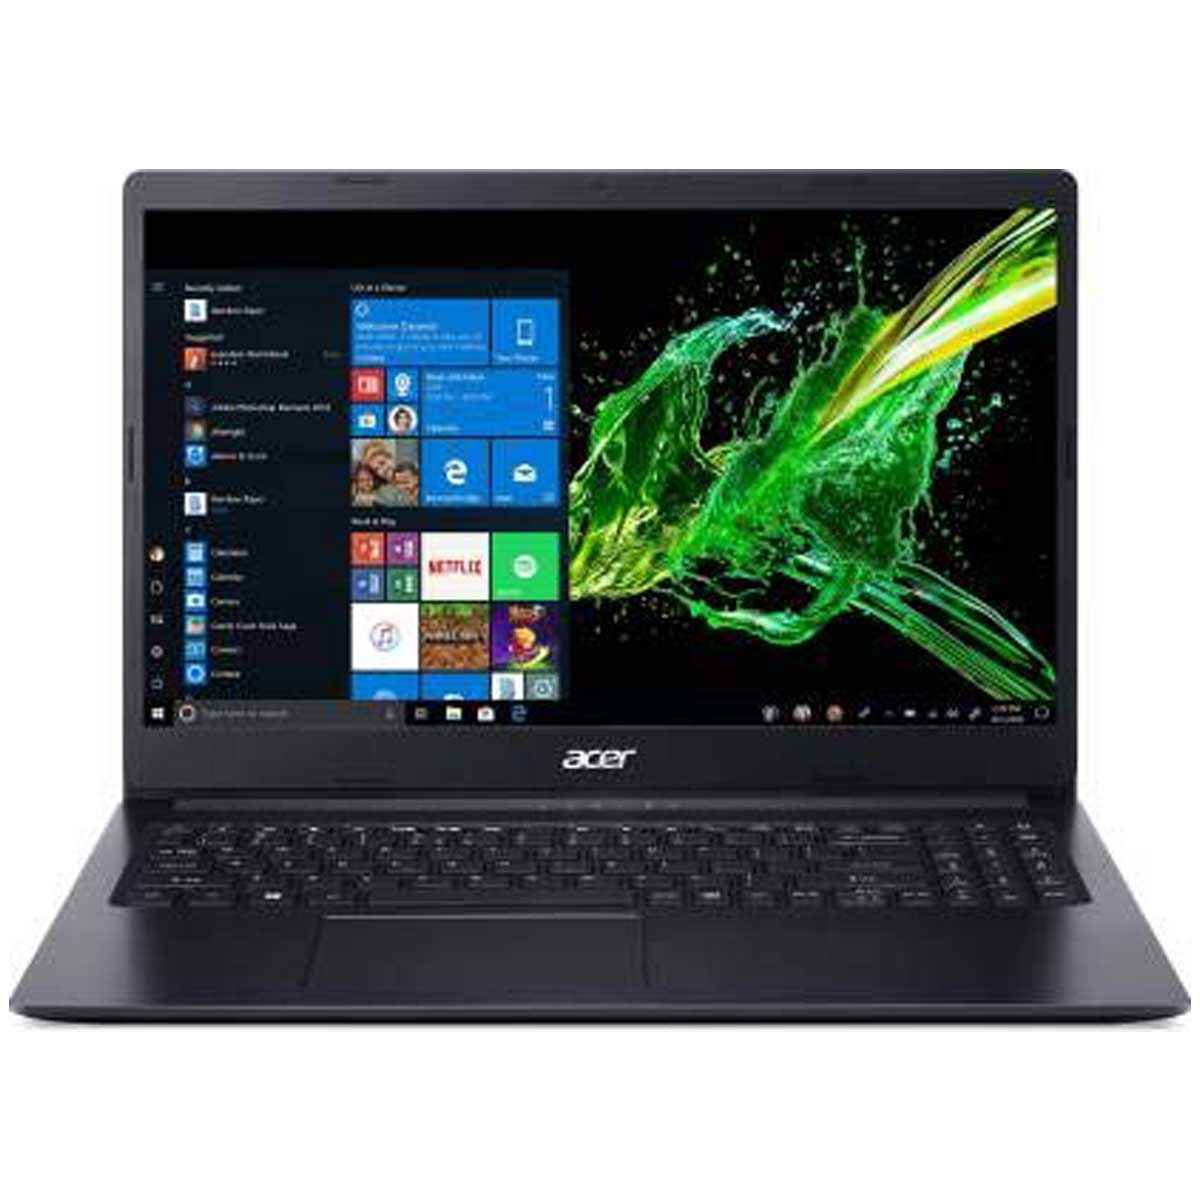 Acer Aspire 3 Pentium Dual Core